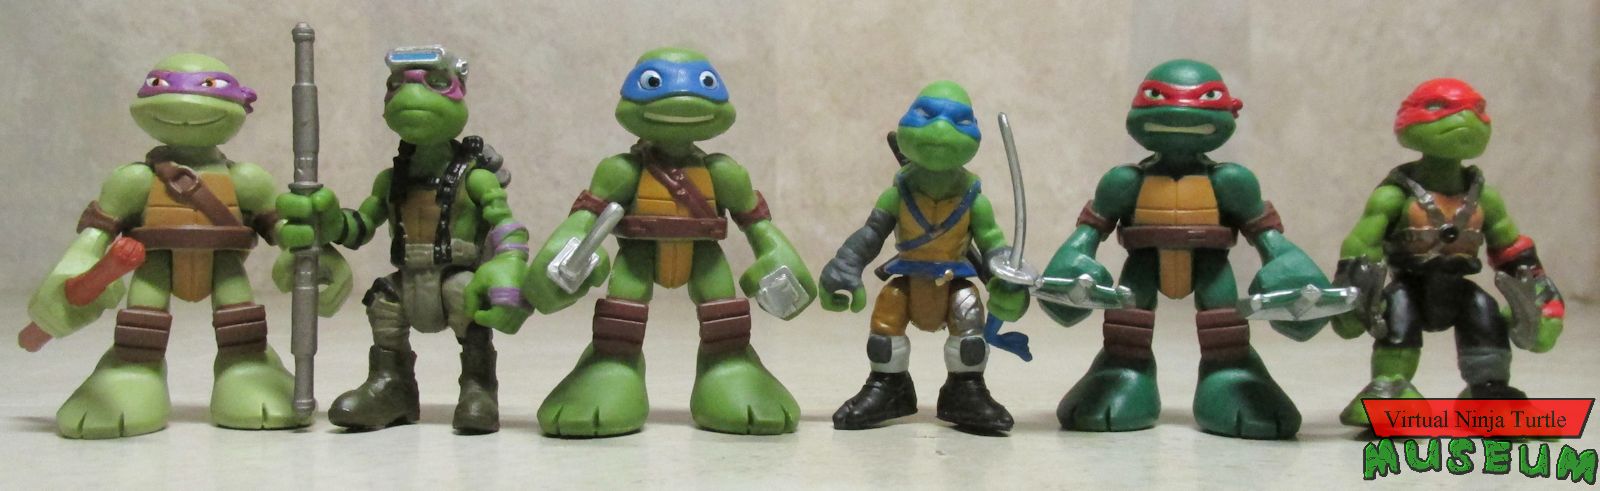 ninja turtle mini figures